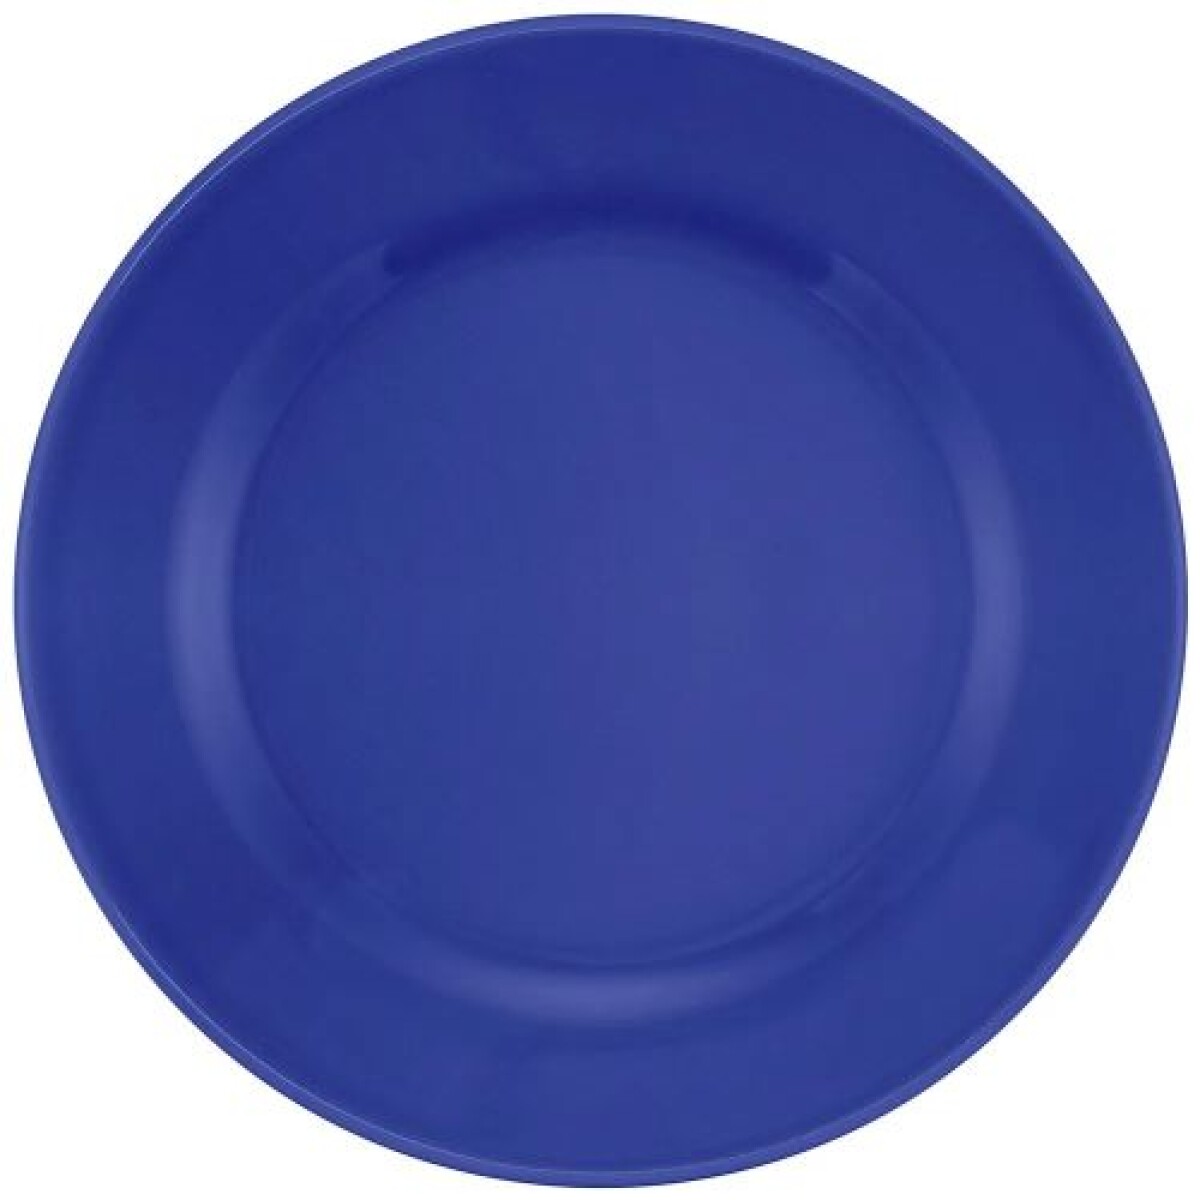 Plato llano Azul 24 cm Ceramica Oxford - 000 